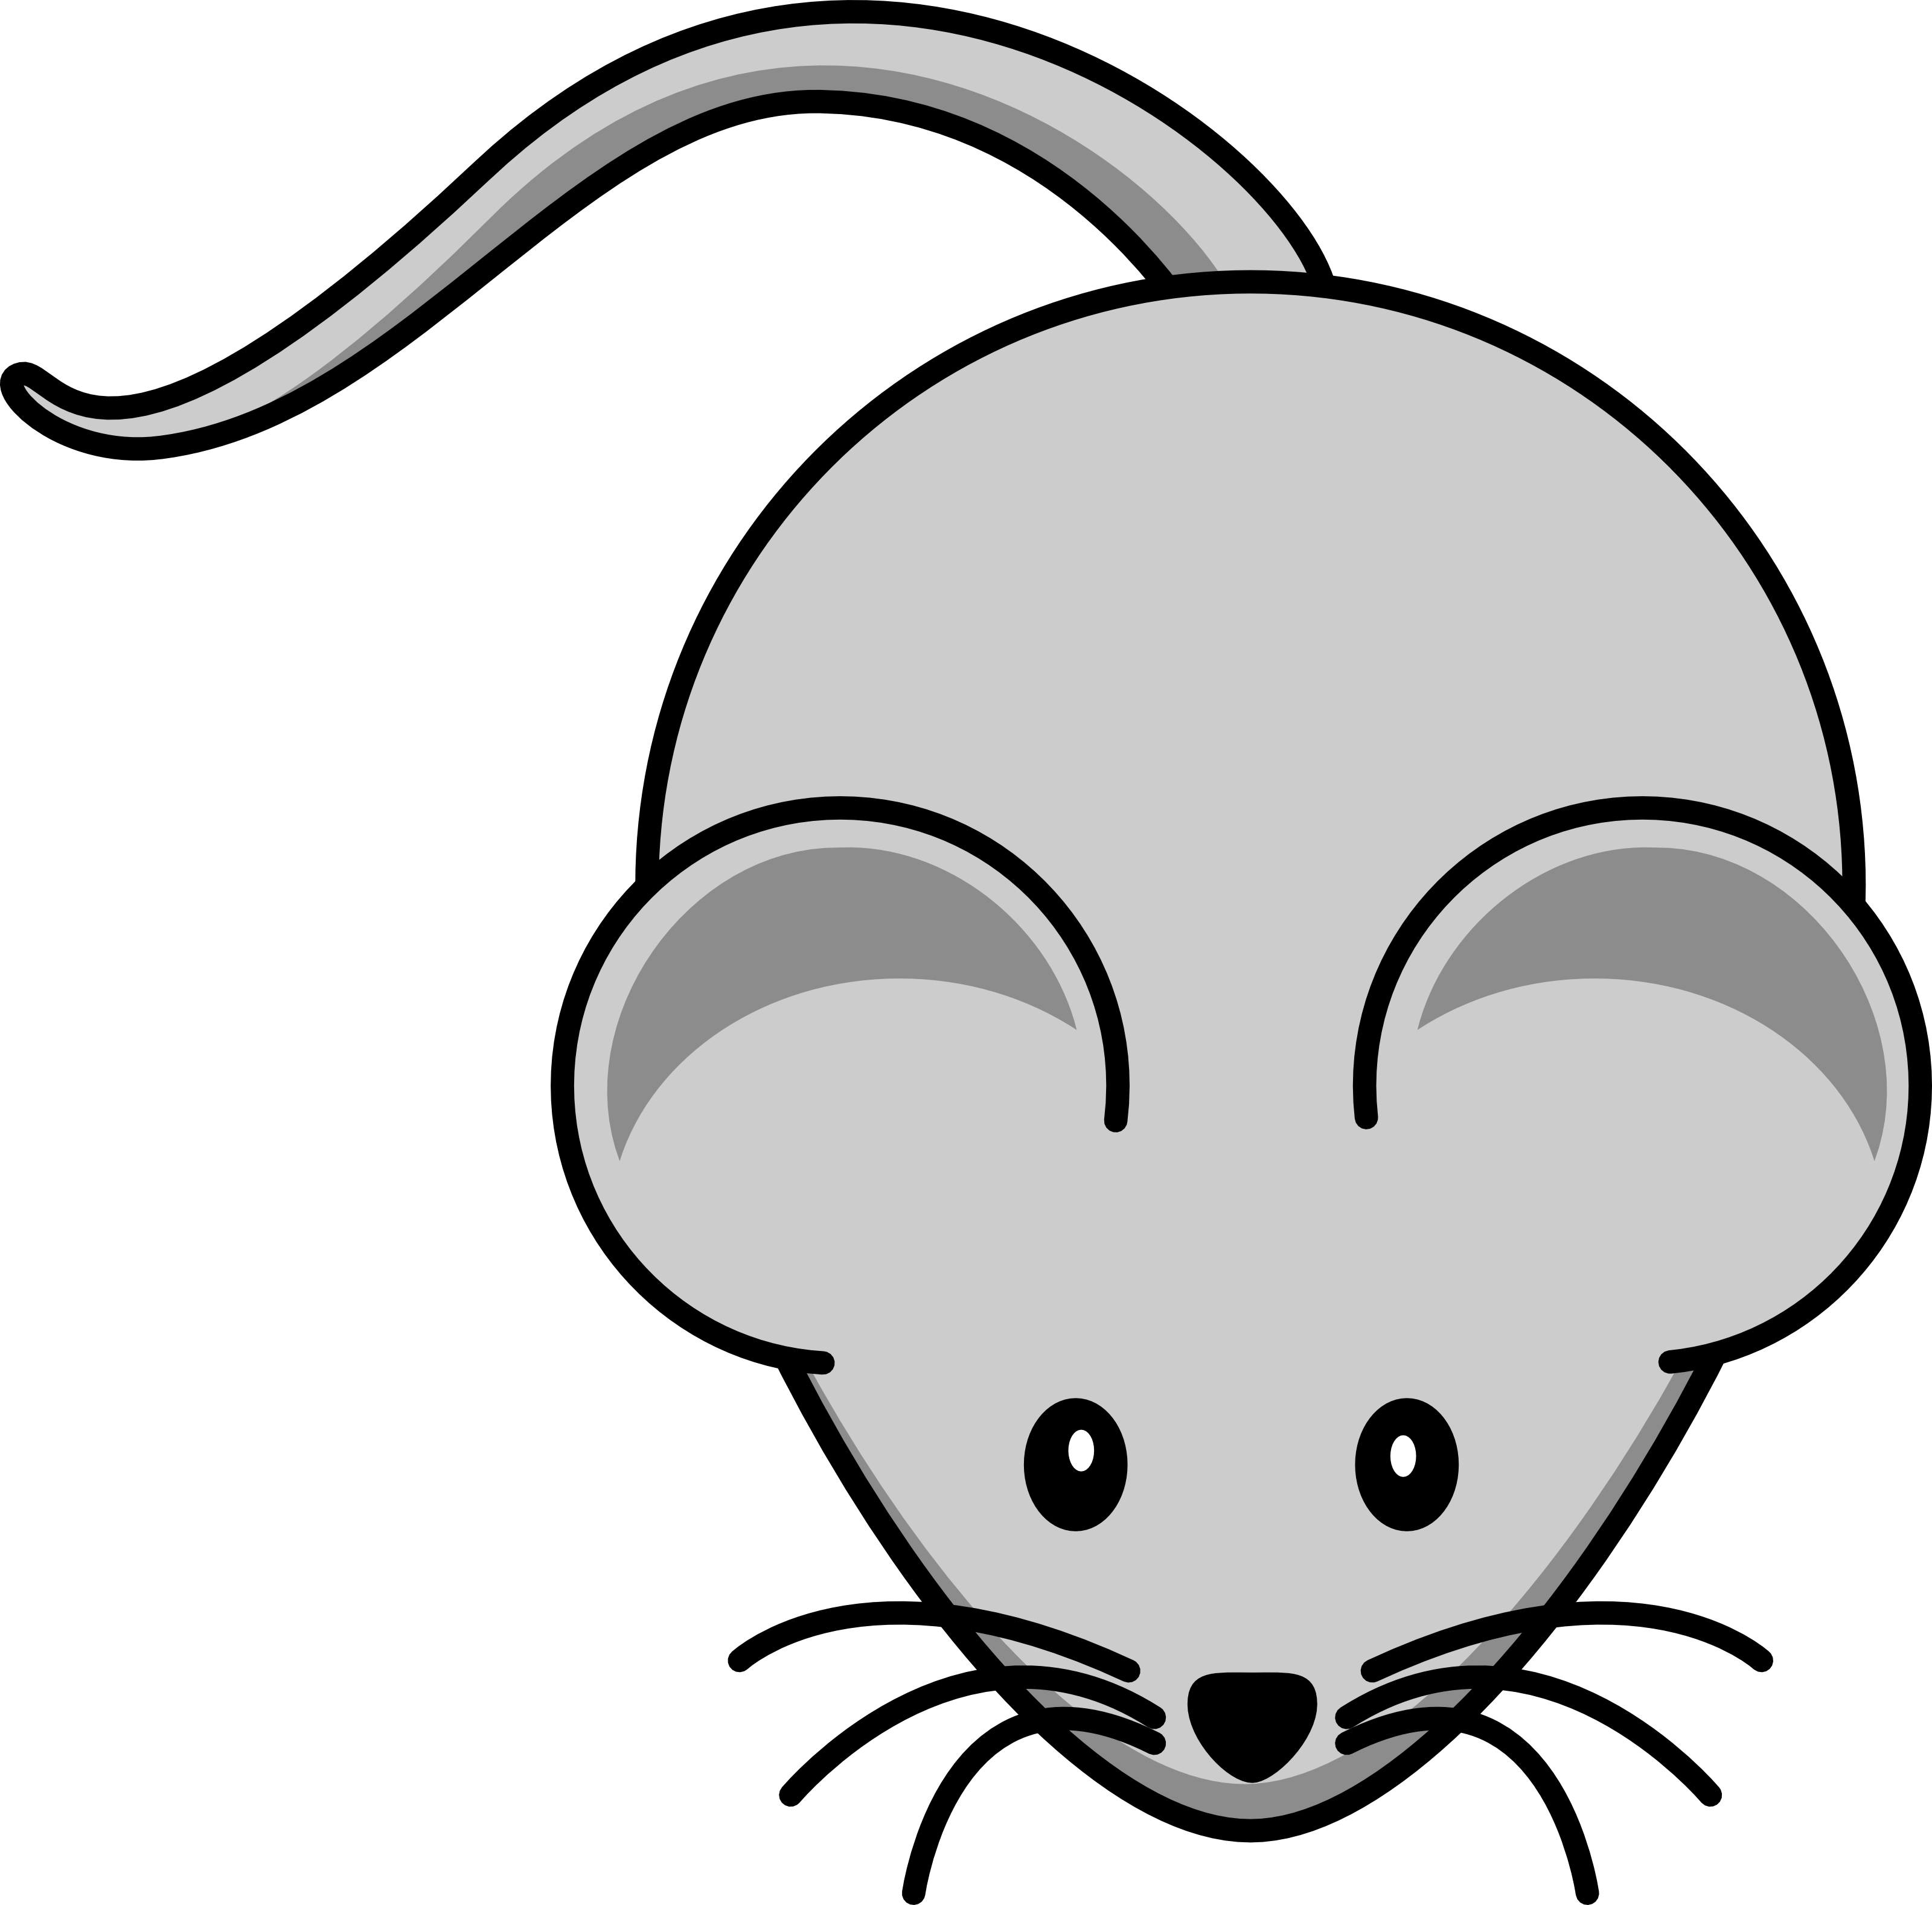 mouse brain clipart - photo #47